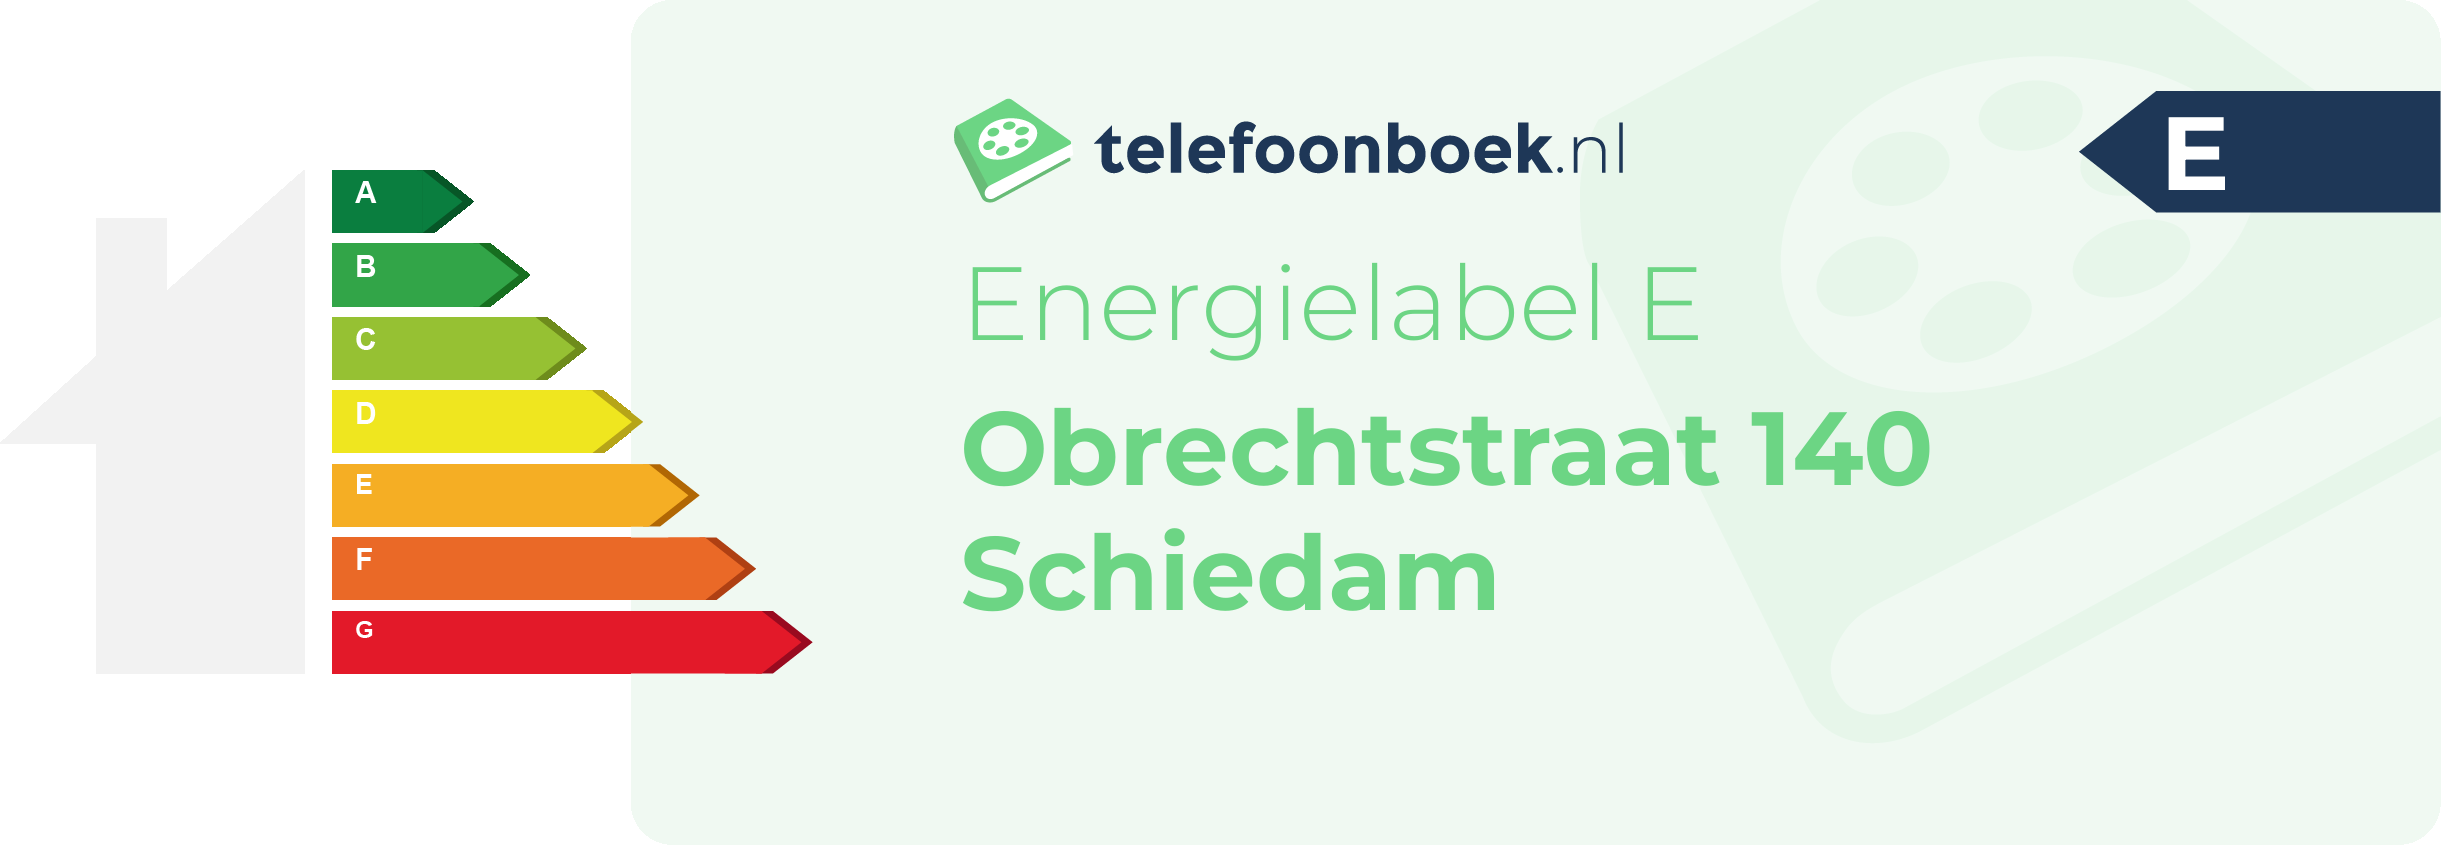 Energielabel Obrechtstraat 140 Schiedam